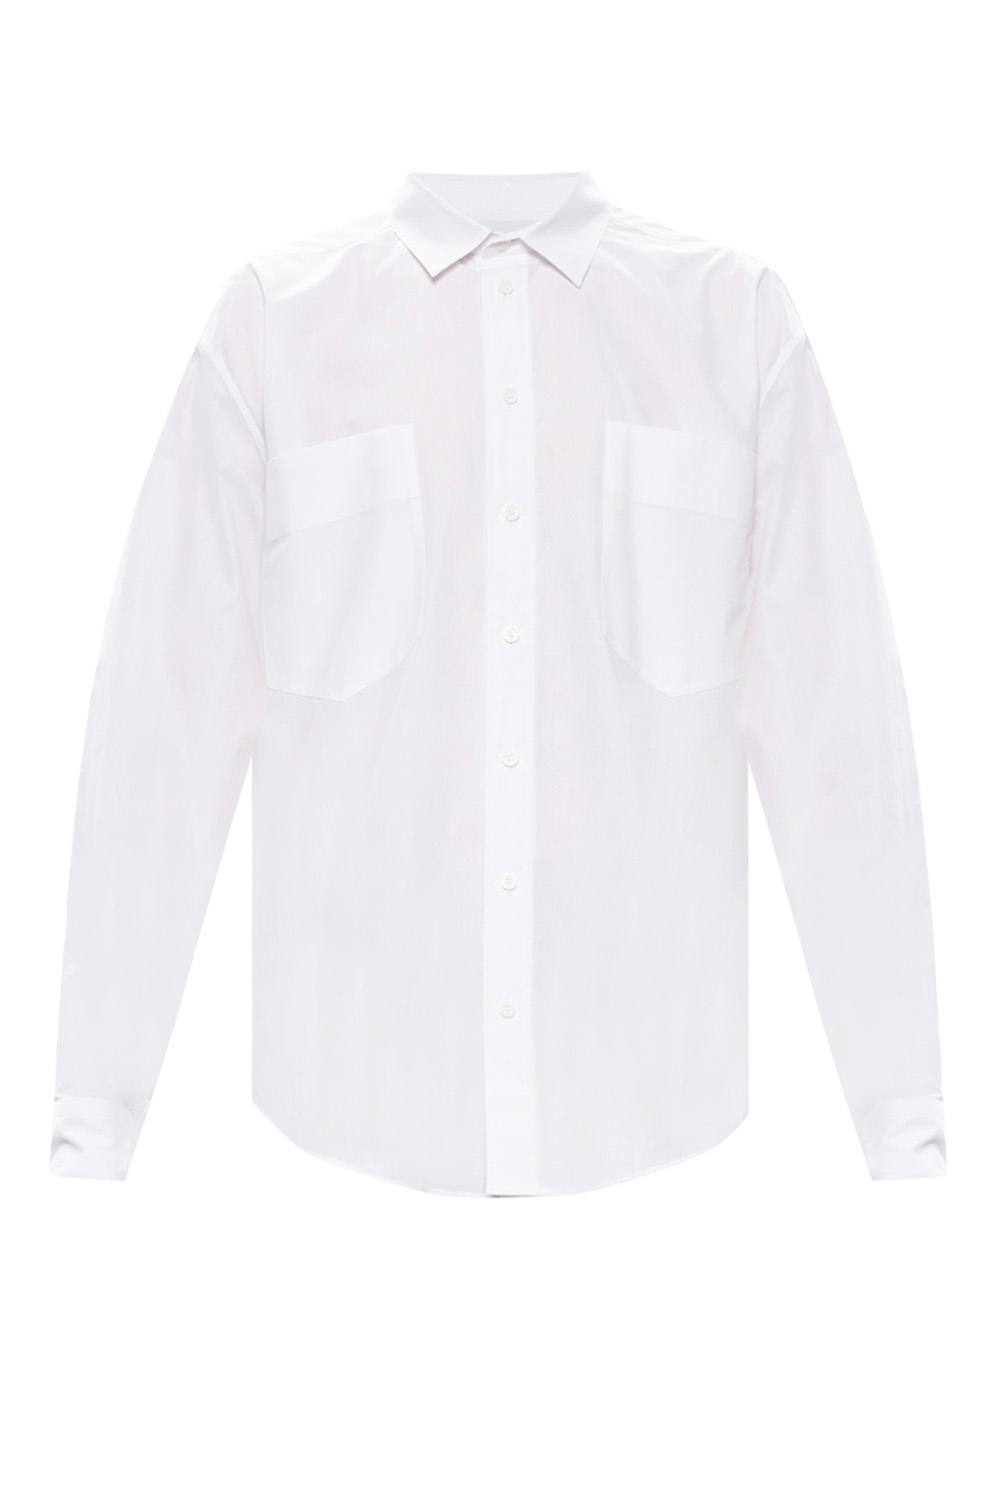 moschino shirt size guide